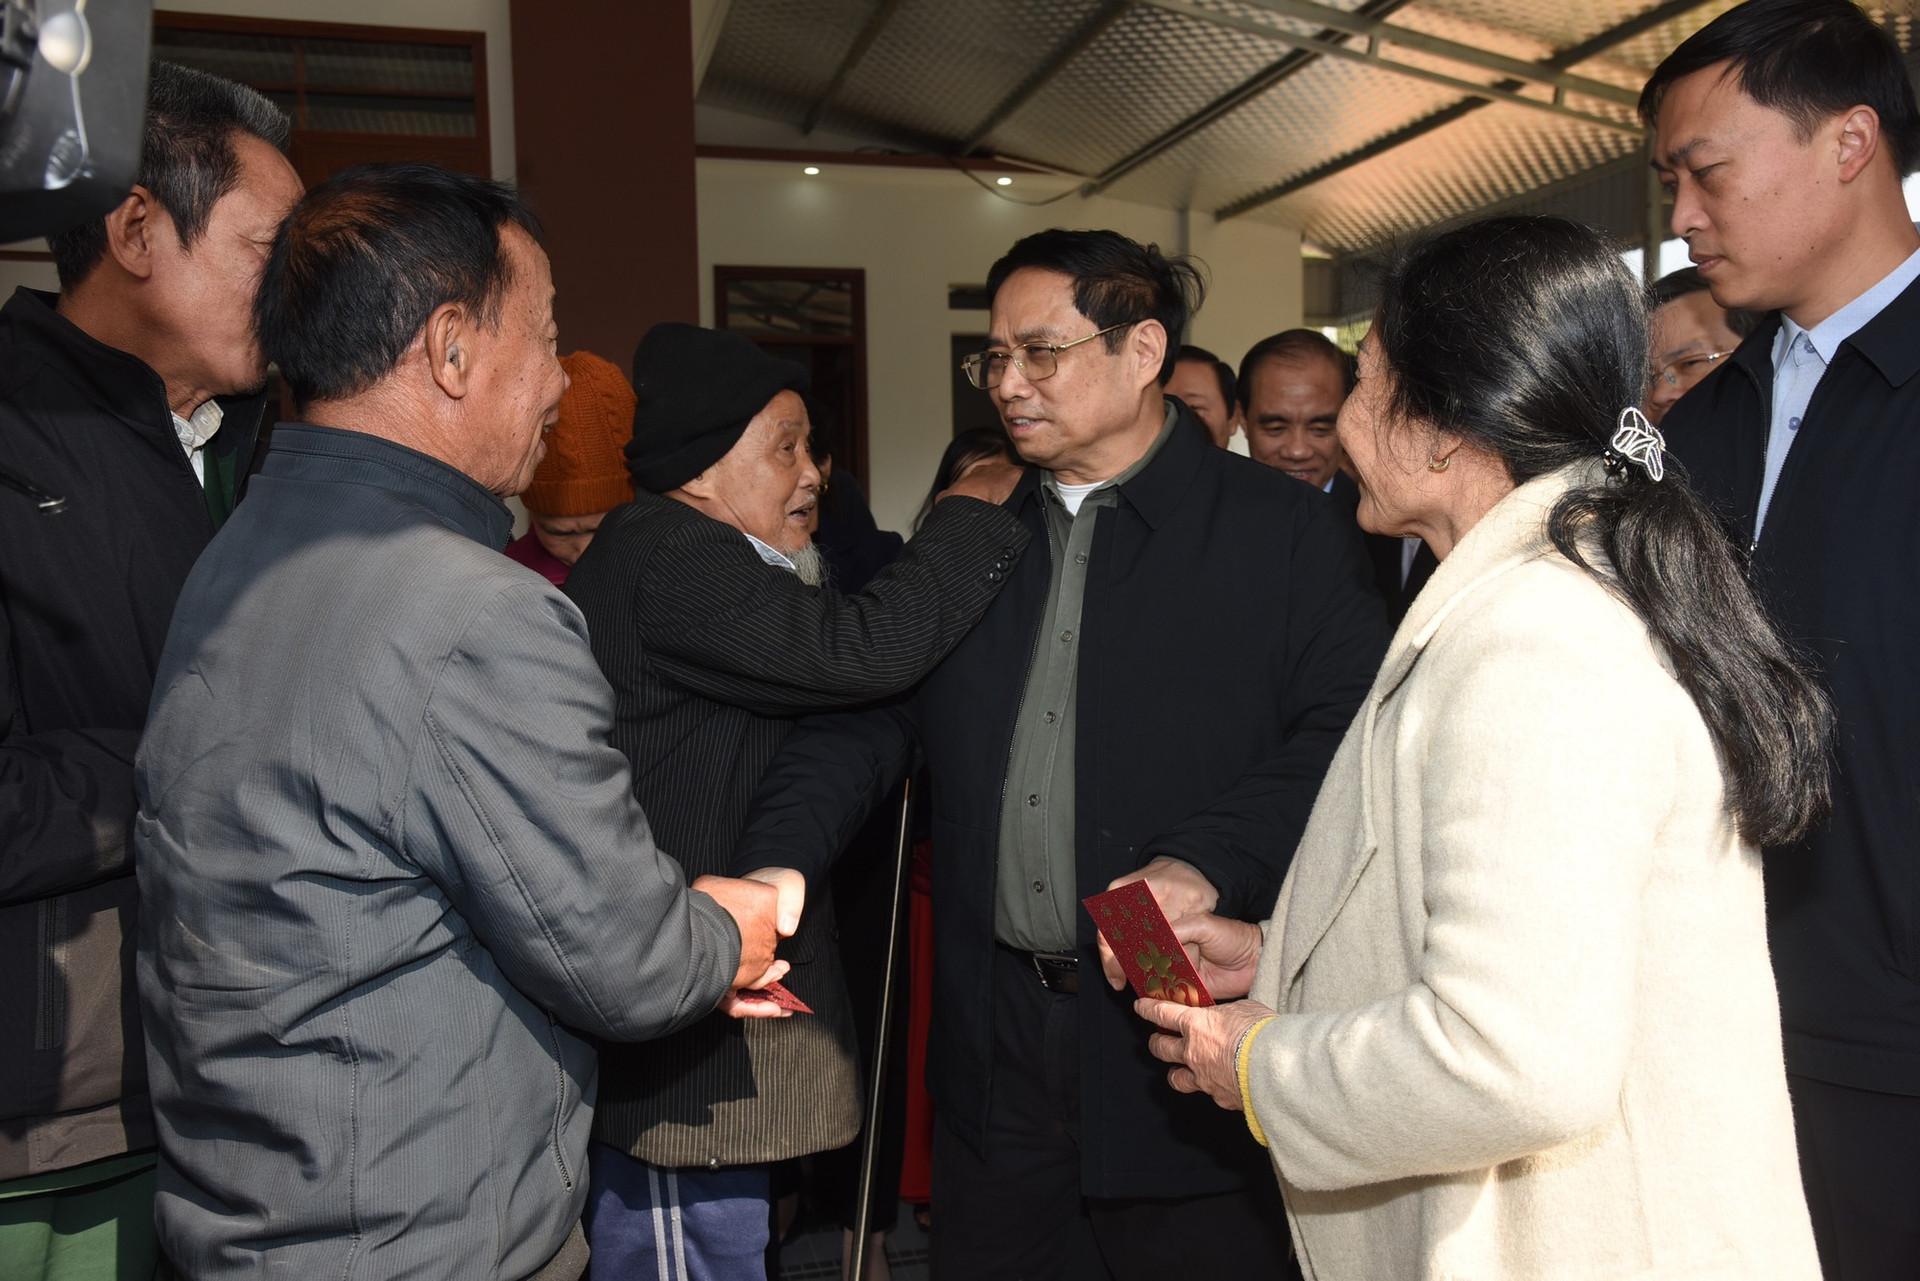 Thủ tướng kiểm tra, đôn đốc dự án cao tốc Tuyên Quang-Phú Thọ, chúc Tết công nhân và người dân khu tái định cư - Ảnh 8.